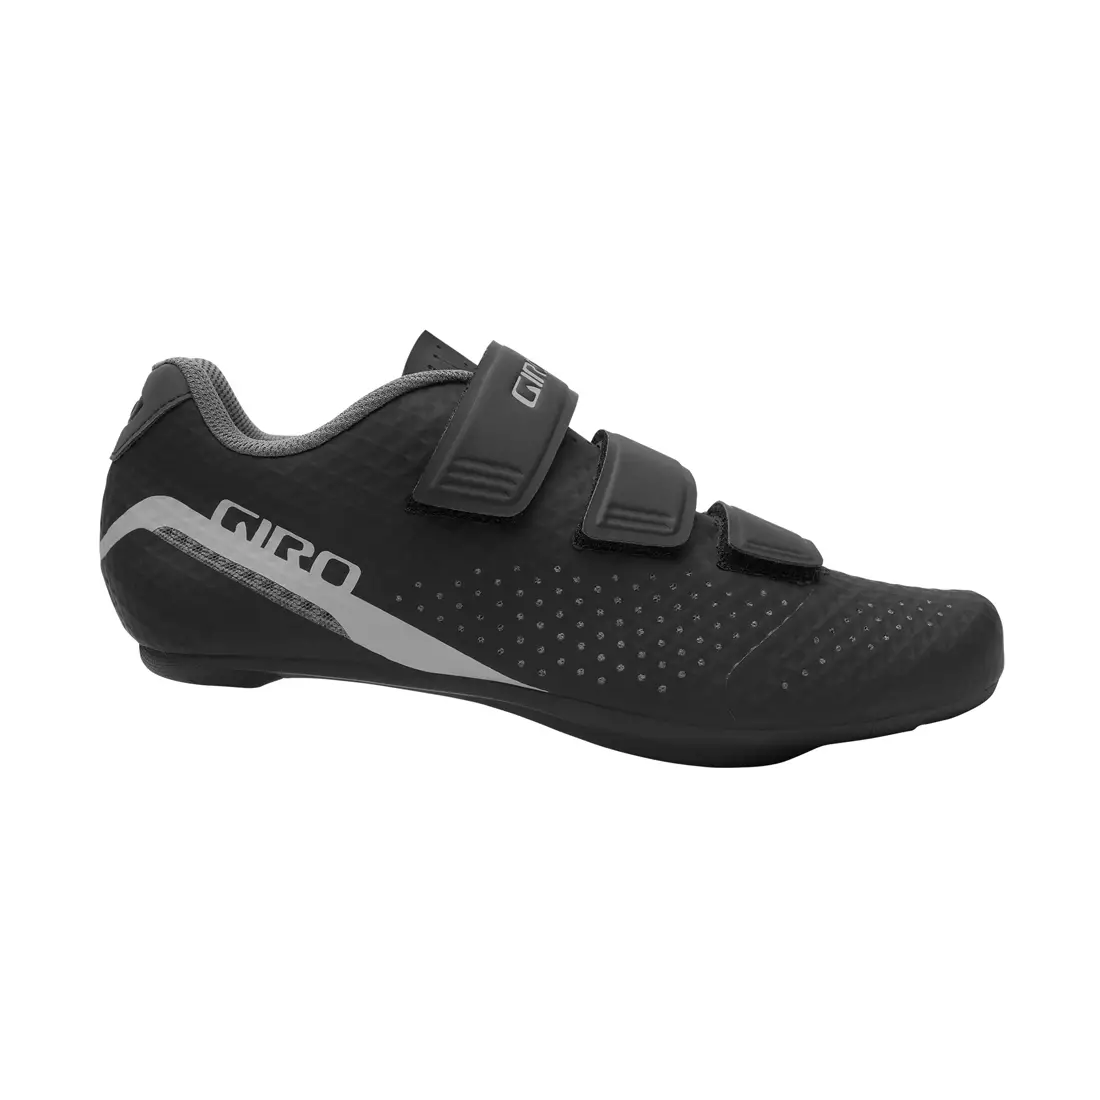 GIRO women's cycling shoes STYLUS W black